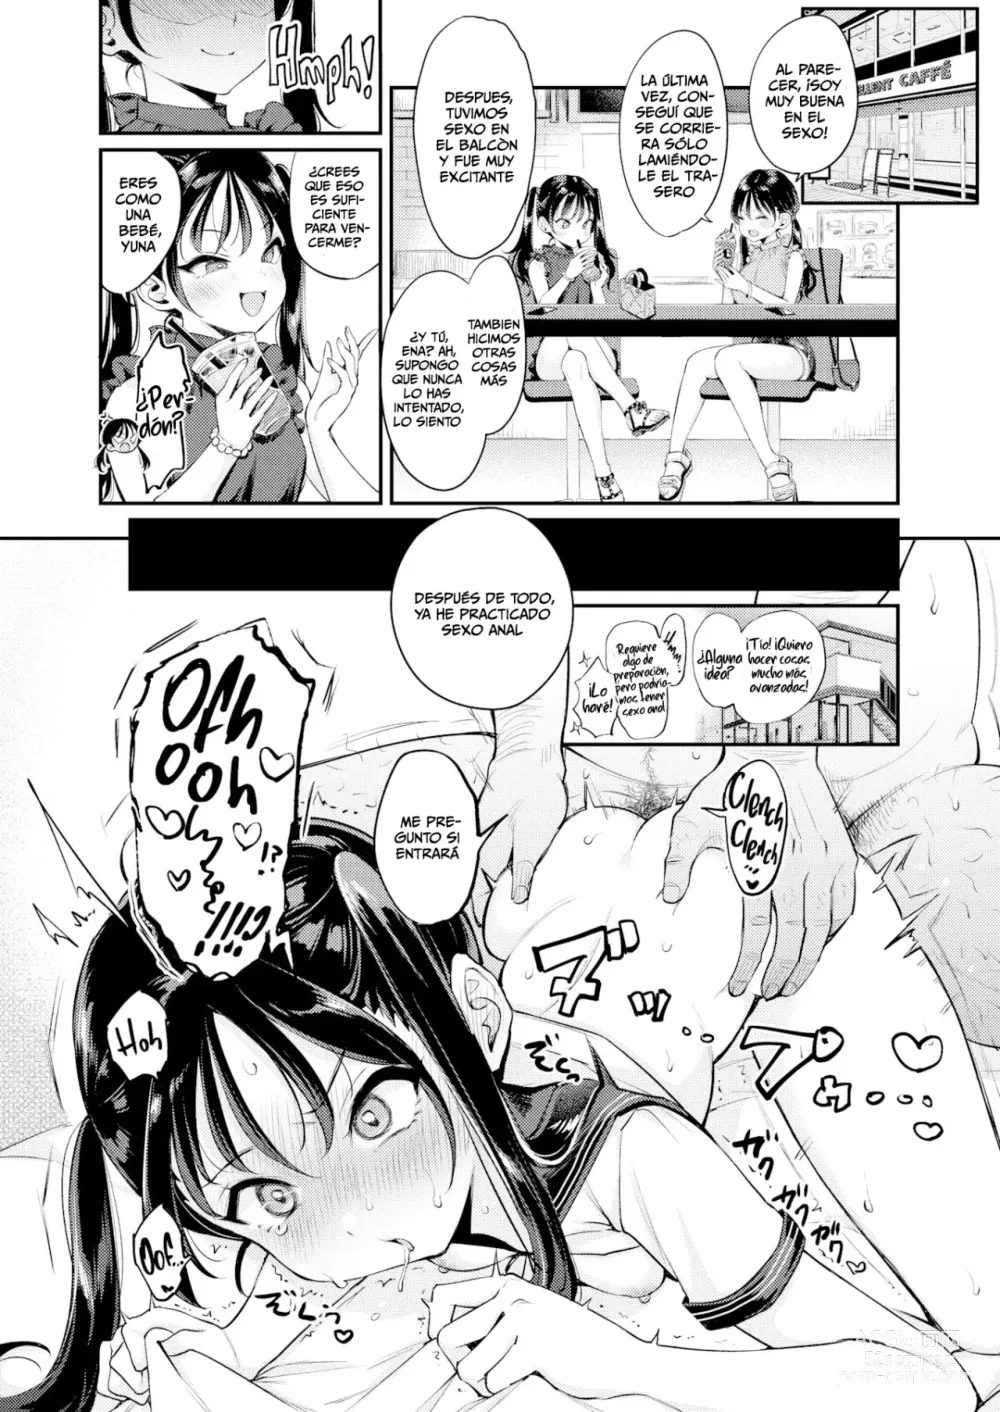 Page 10 of manga Competencia de Sobrinas